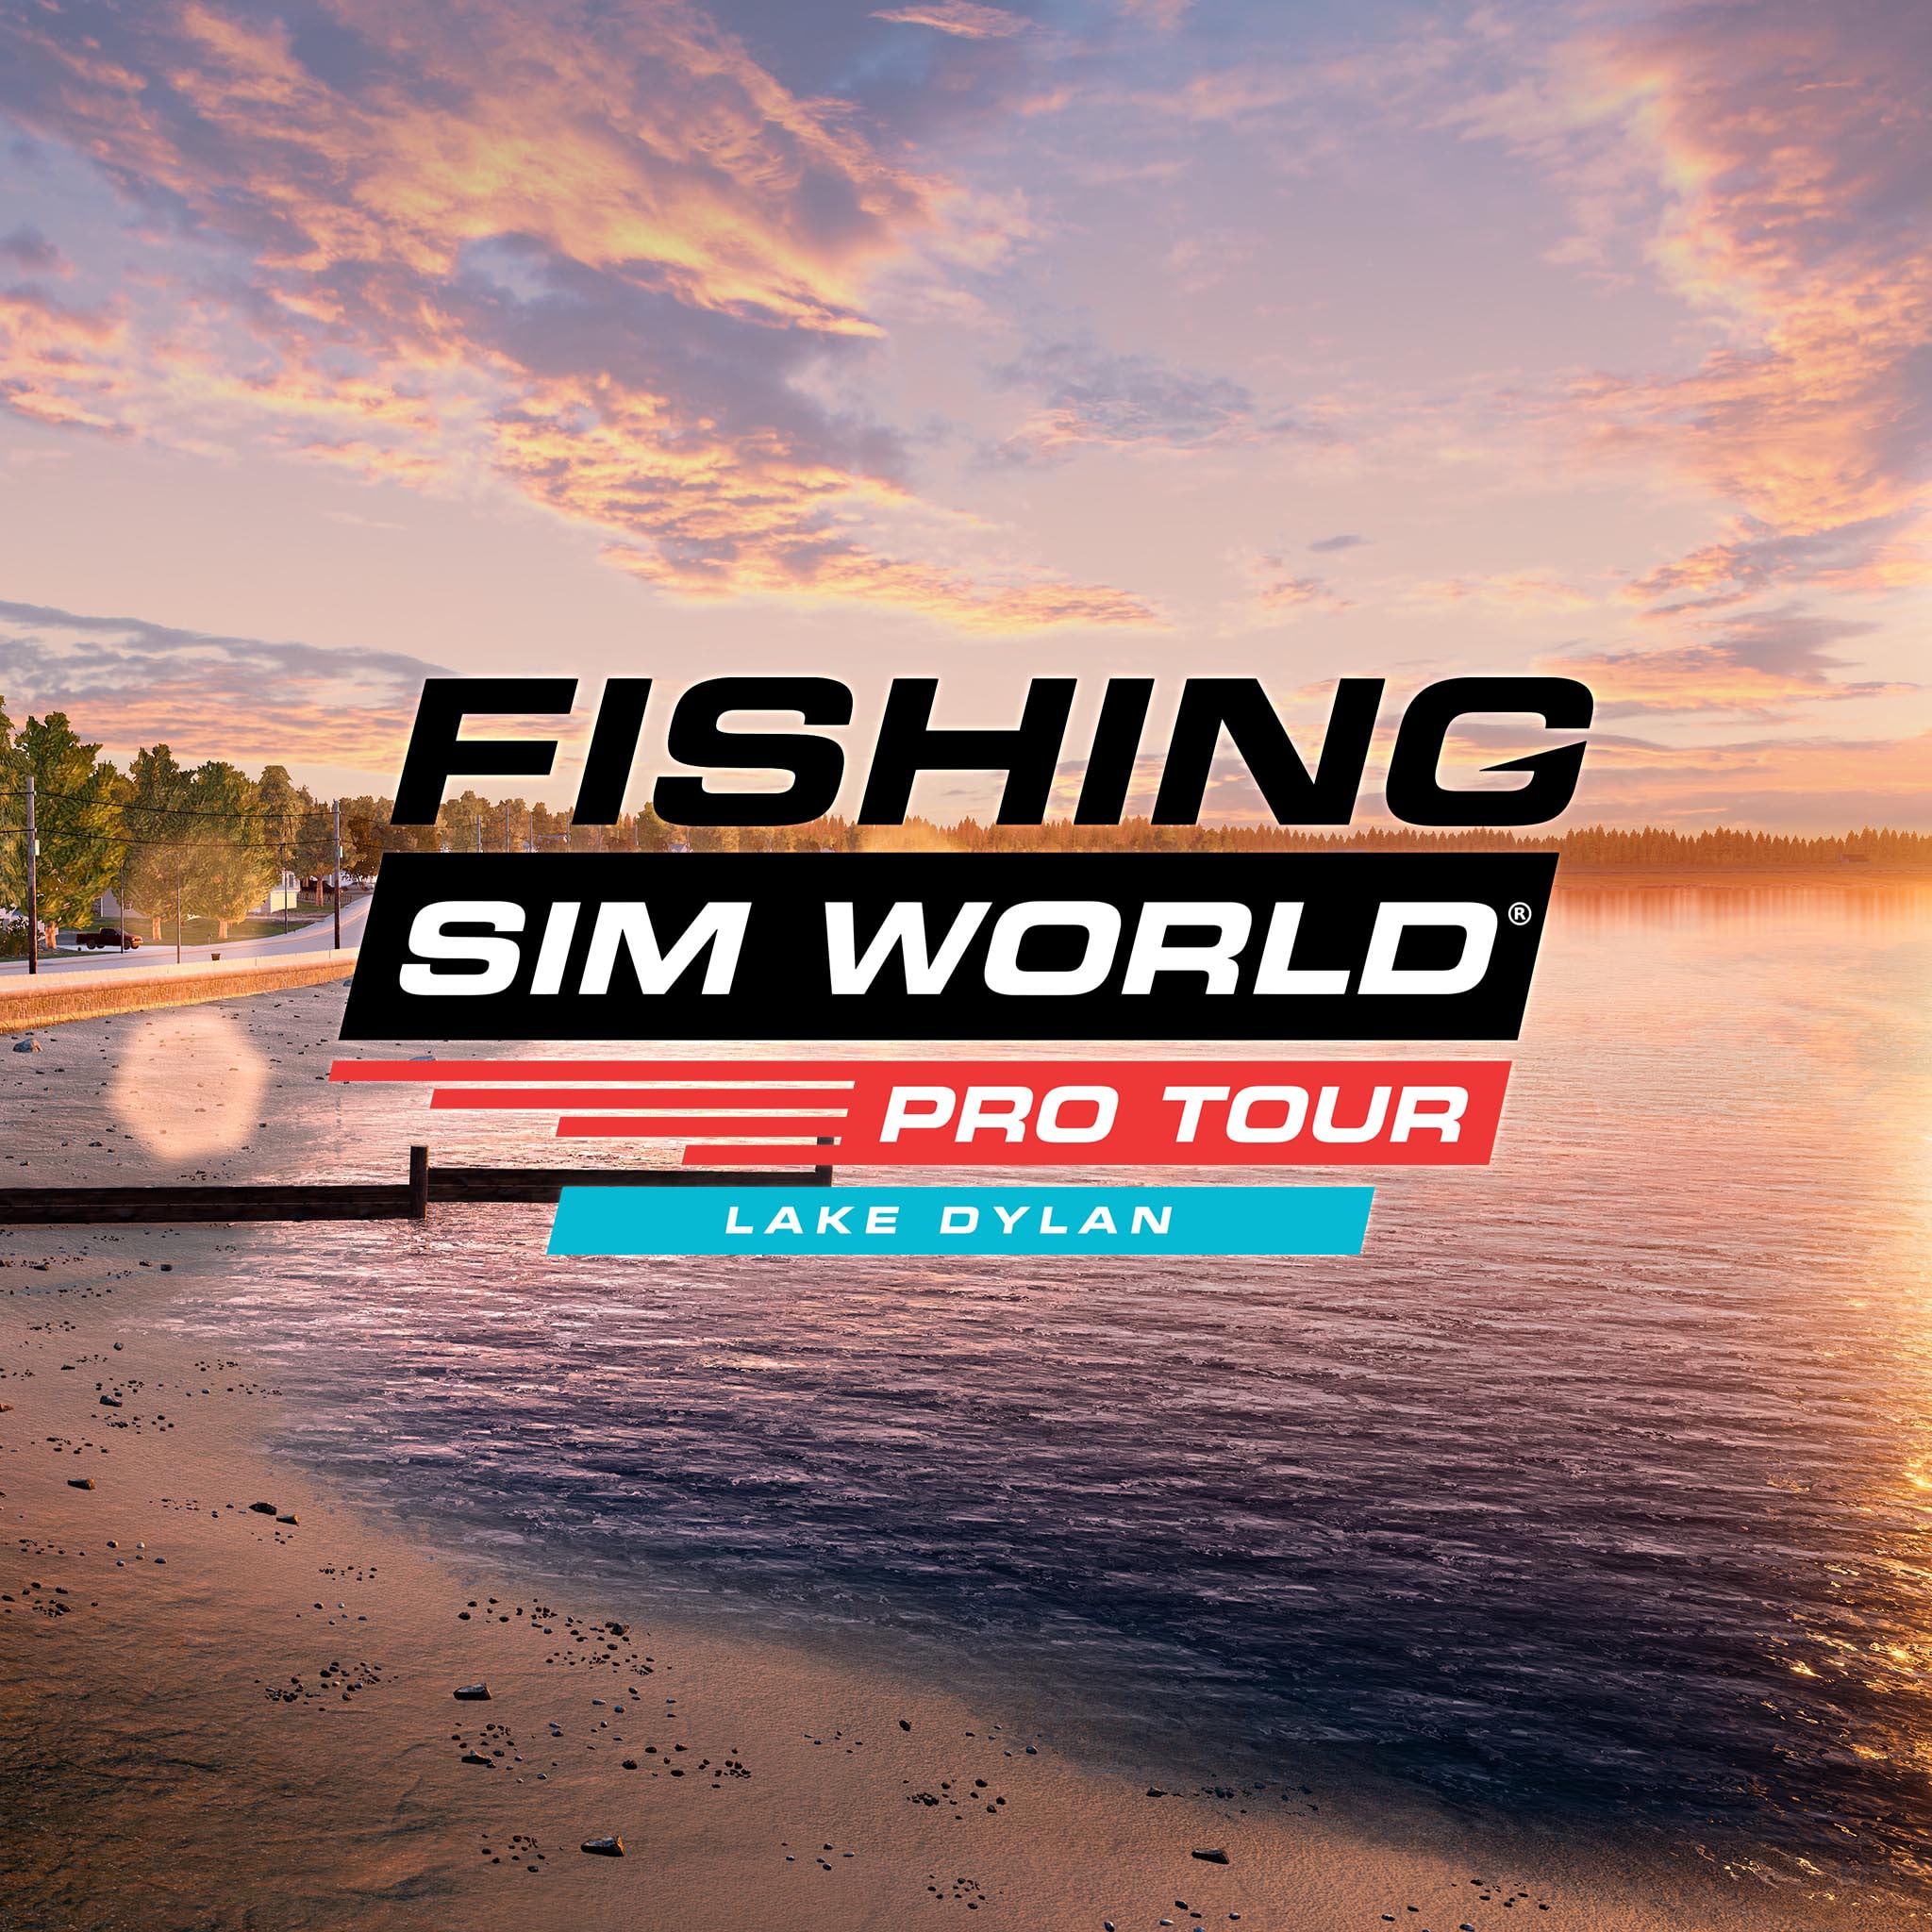 Fishing Sim World®: Pro Tour - Lake Dylan